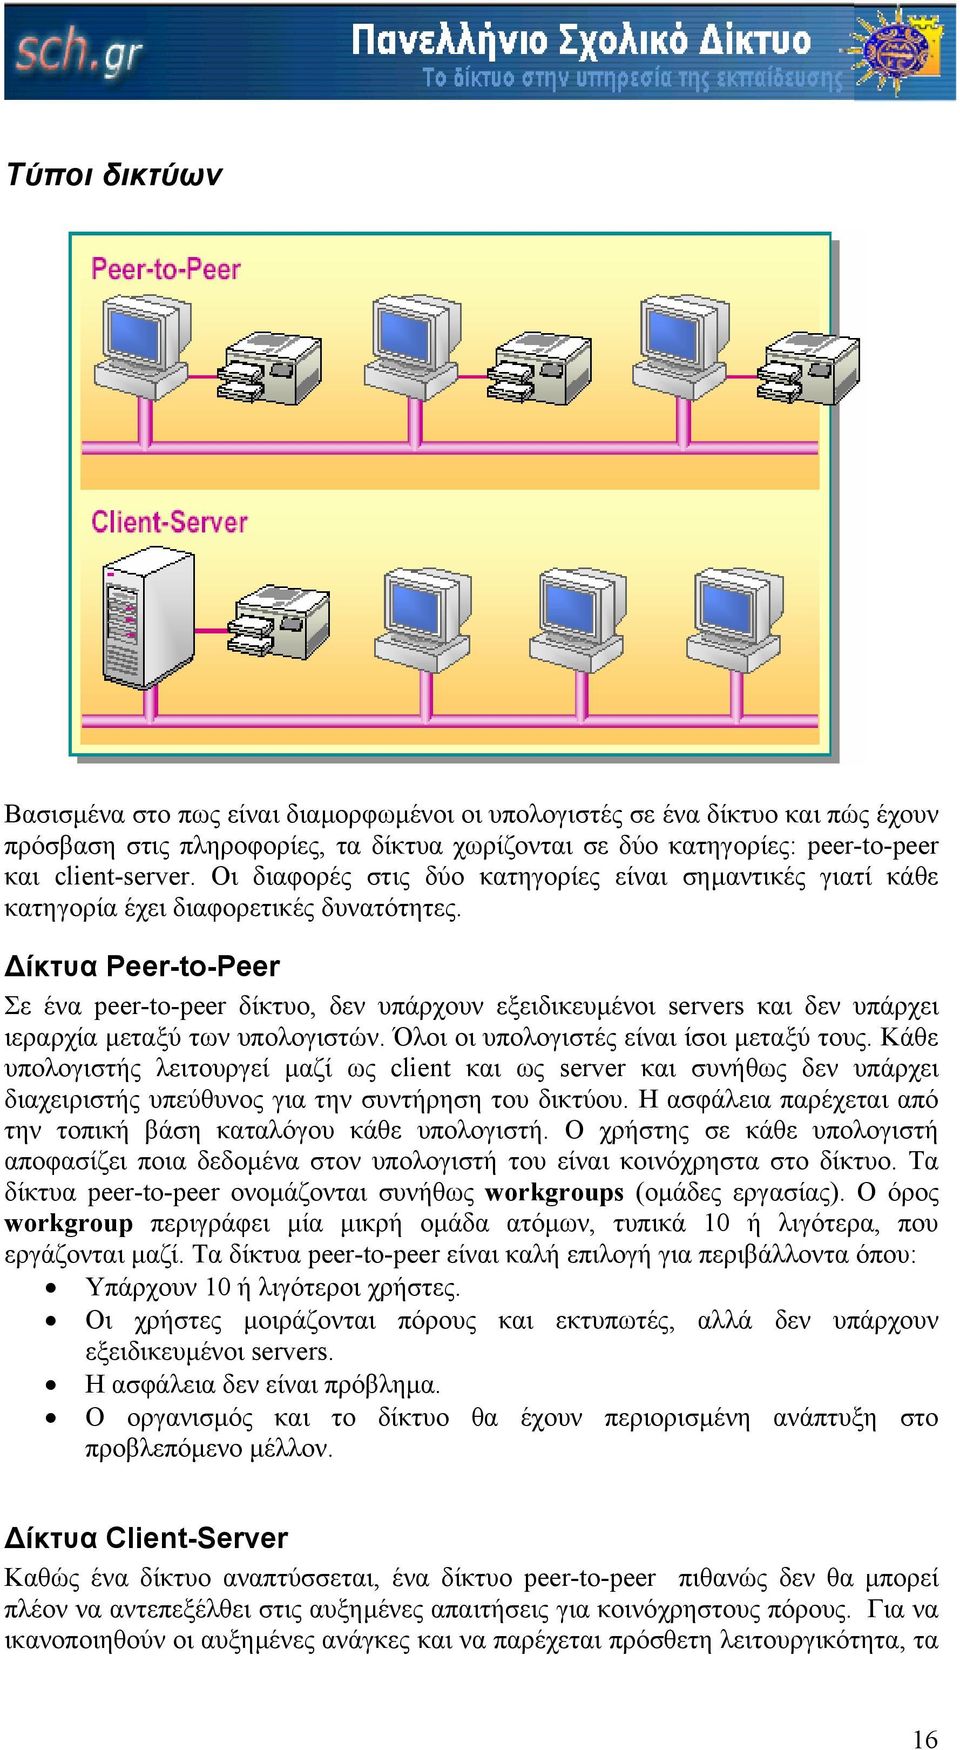 ίκτυα Peer-to-Peer Σε ένα peer-to-peer δίκτυο, δεν υπάρχουν εξειδικευµένοι servers και δεν υπάρχει ιεραρχία µεταξύ των υπολογιστών. Όλοι οι υπολογιστές είναι ίσοι µεταξύ τους.